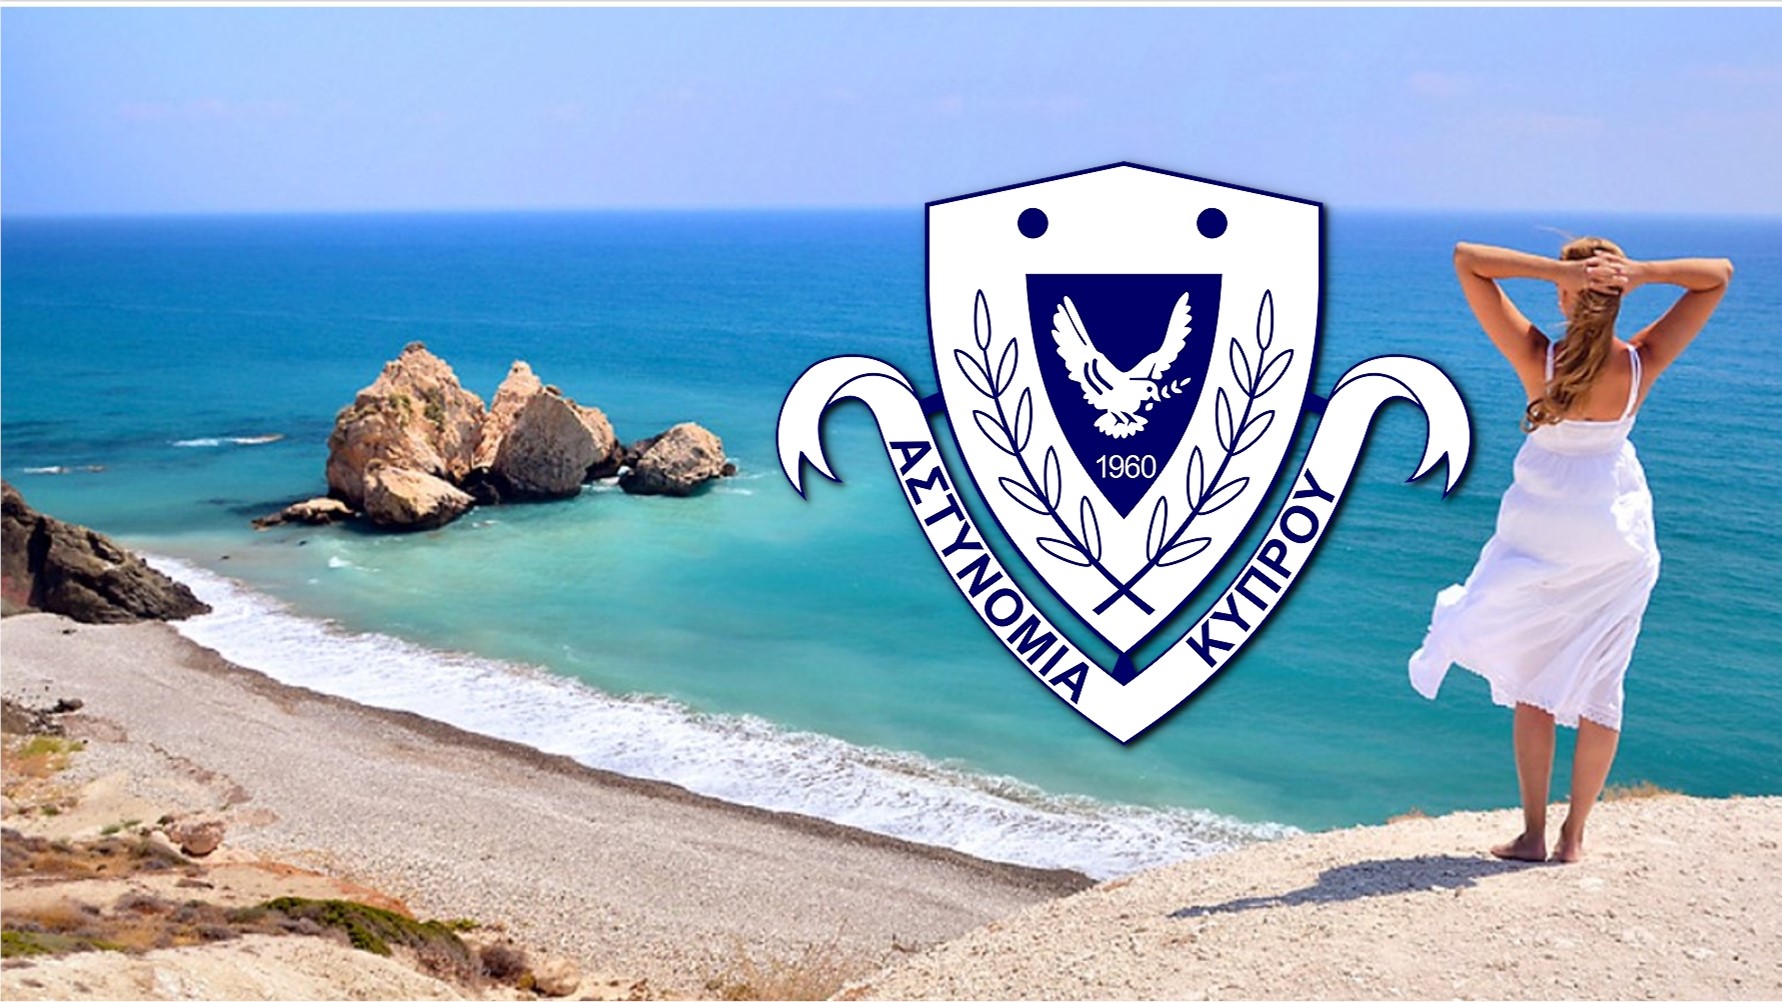 Αστυνομία Κύπρου: Μέτρα προστασίας της περιουσίας σας κατά τη διάρκεια των διακοπών στα παράλια και ορεινά τουριστικά θέρετρα